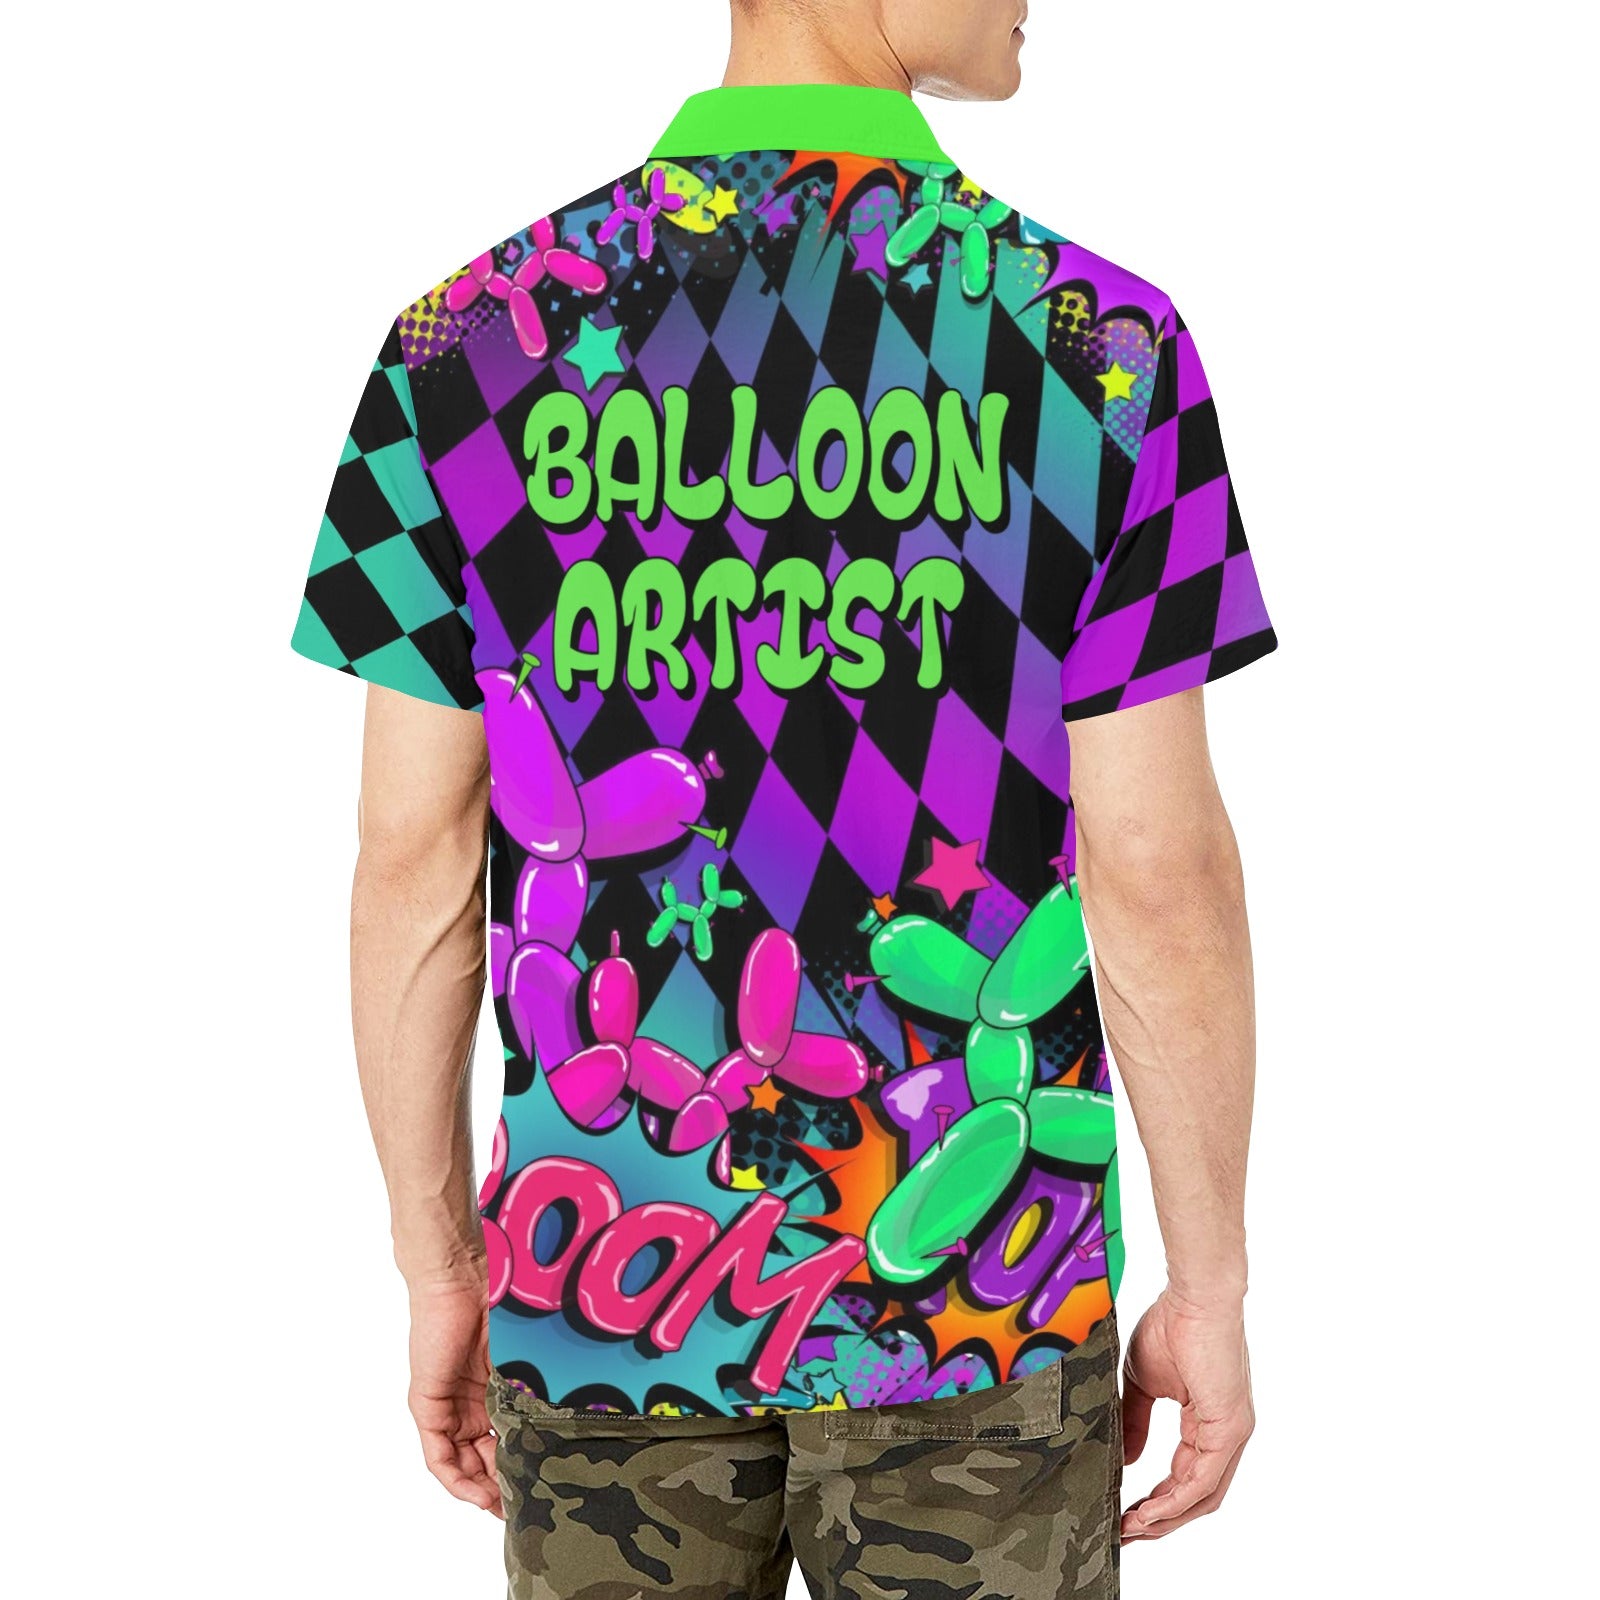 Professional Balloon Artist Clothing Pop Art Shirt